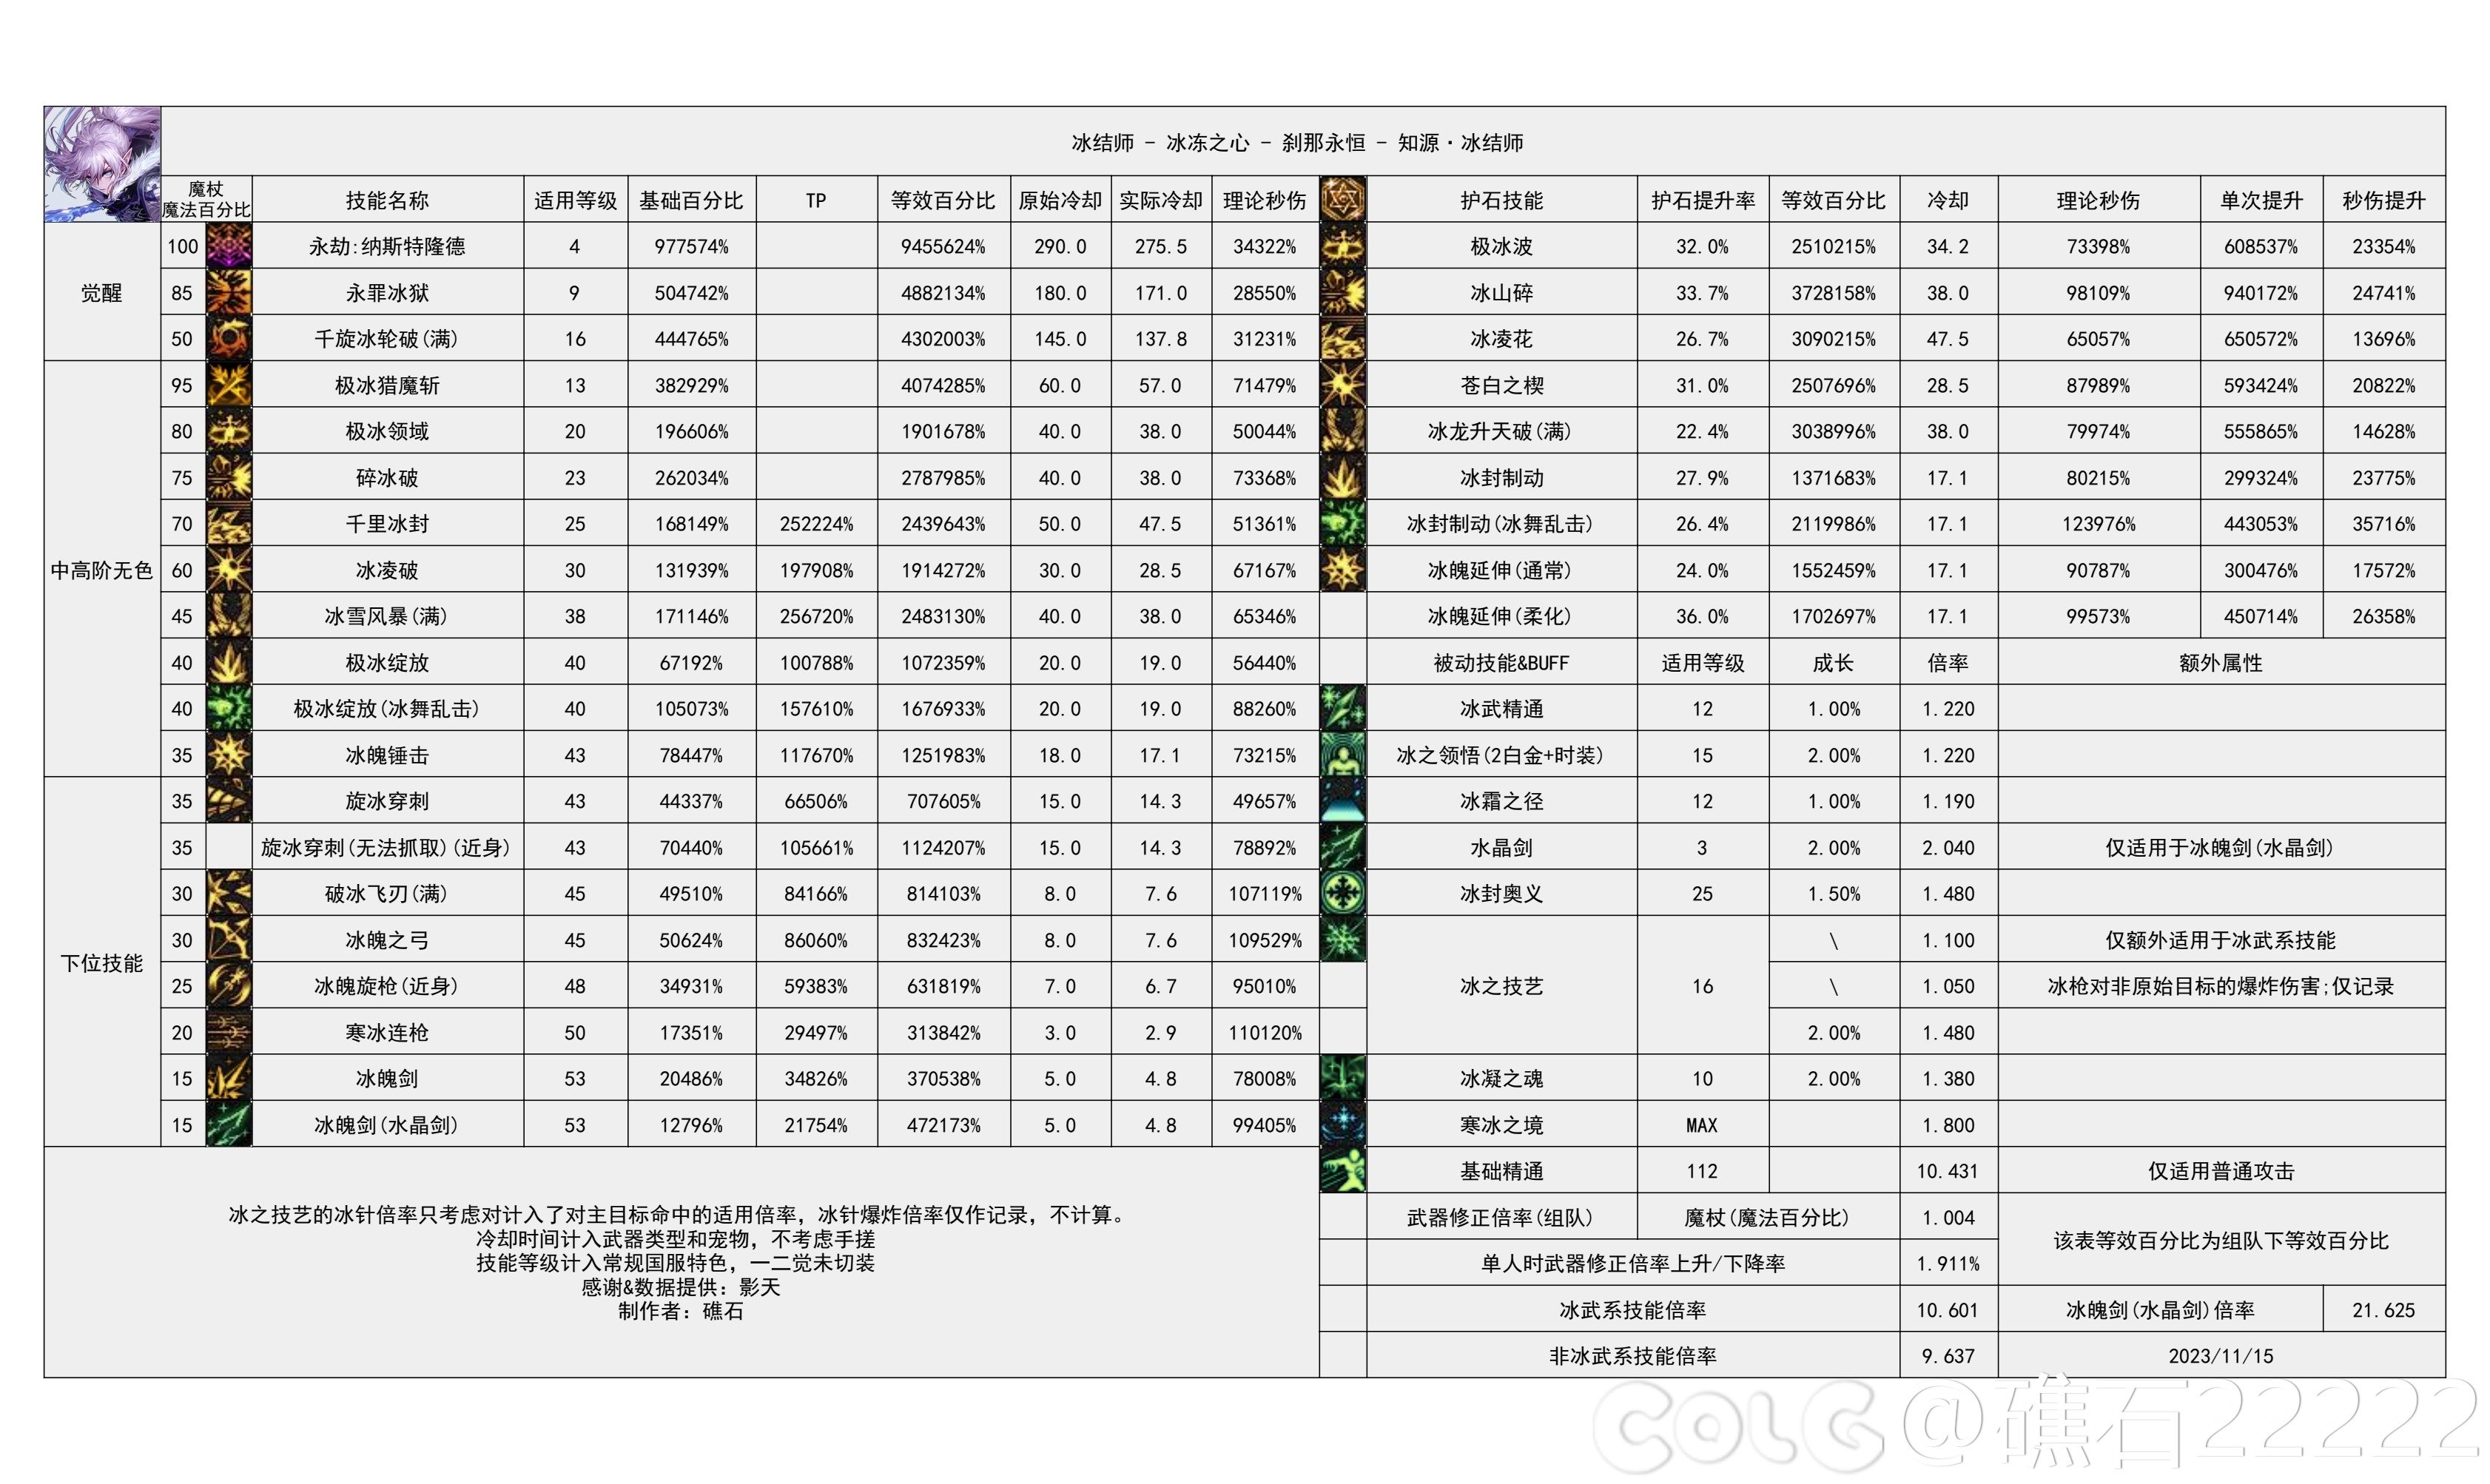 【国服现状】110版本输出职业数据表(国正5.15)(最新)40